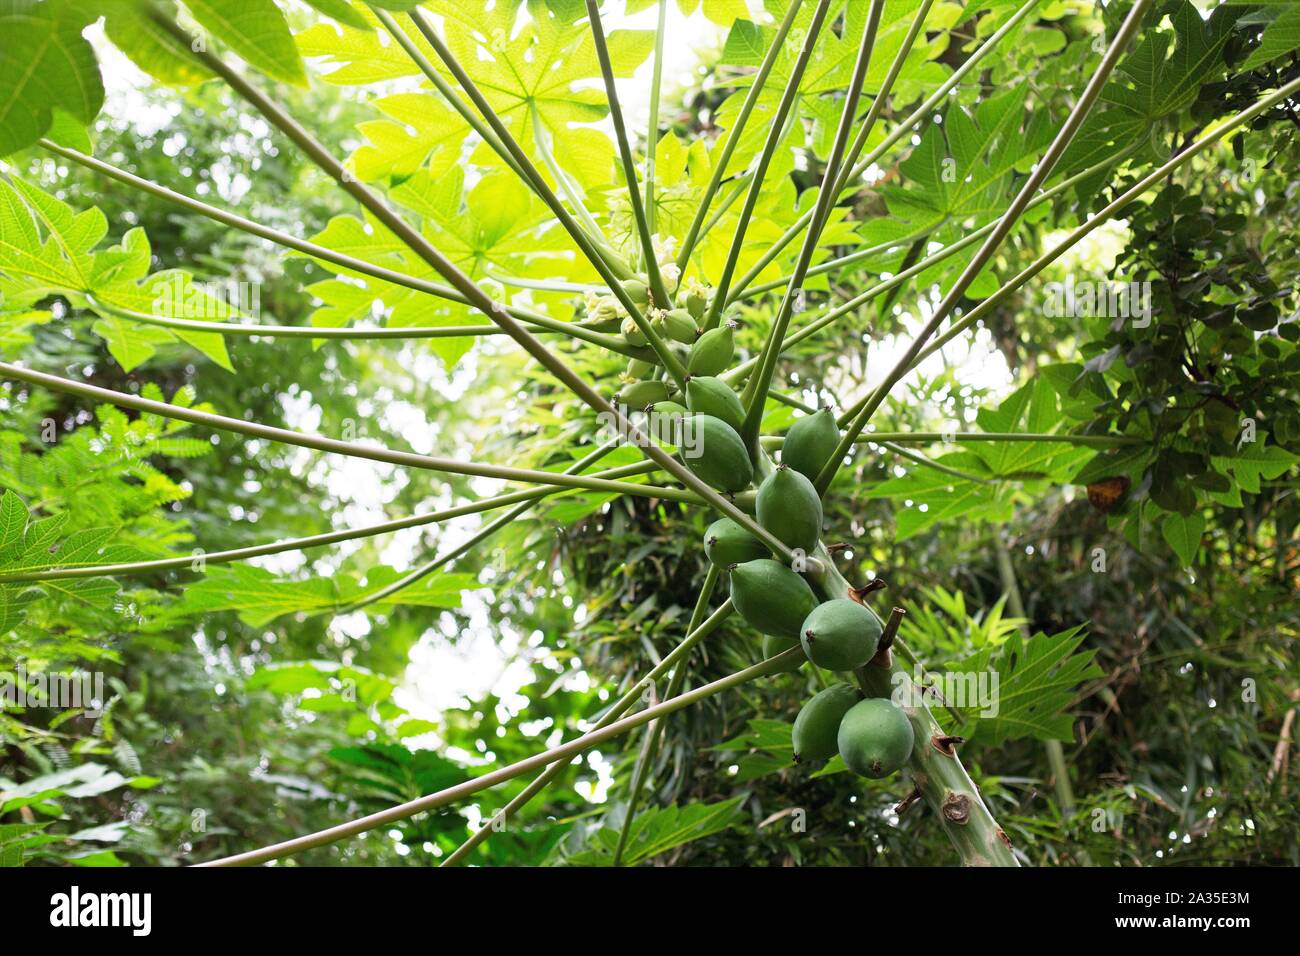 Carica papaya Baum. Stockfoto